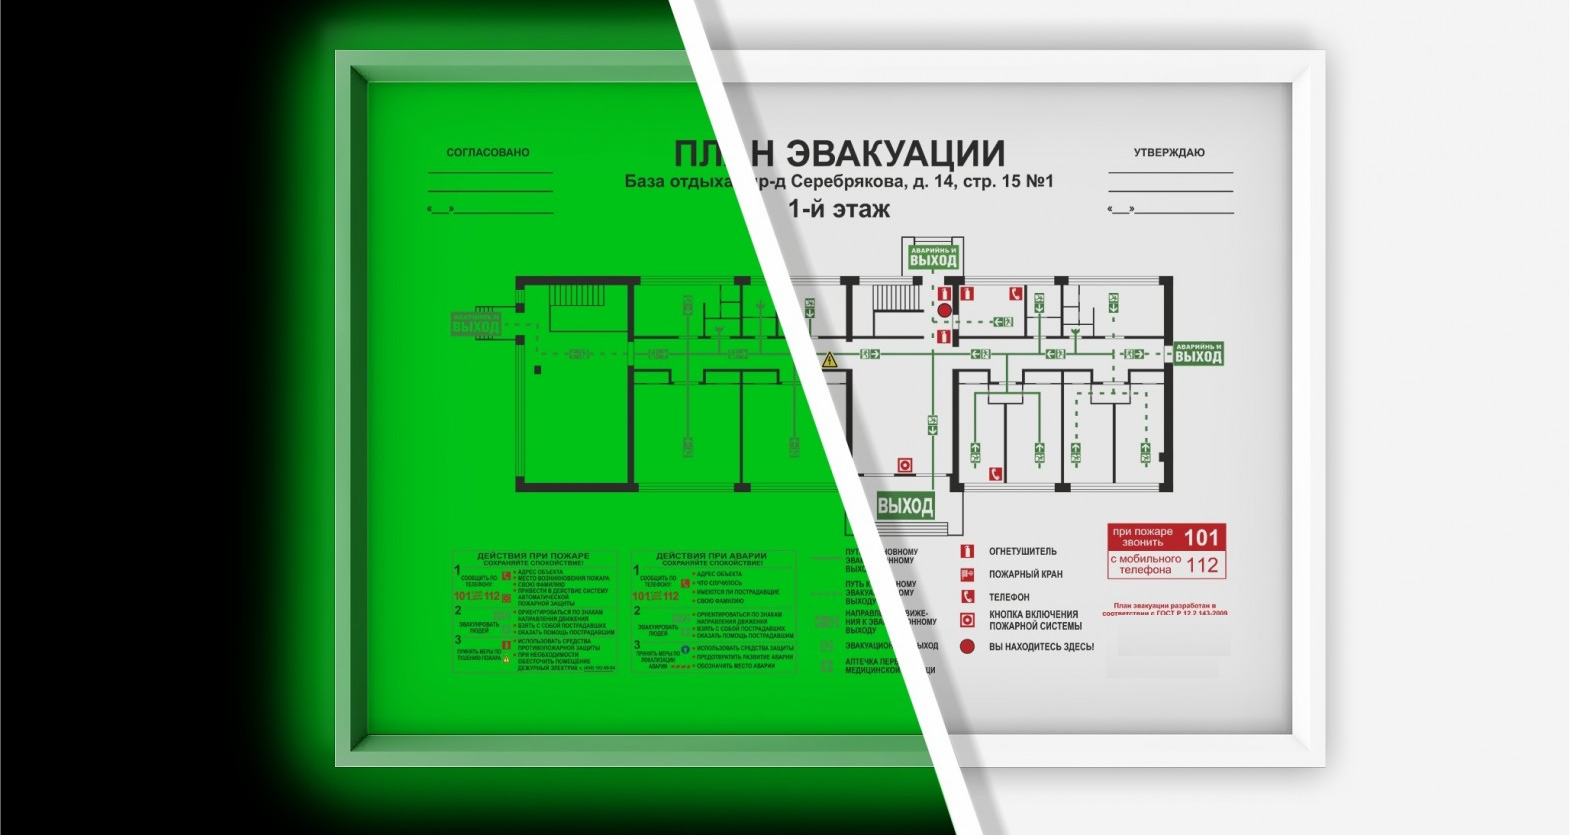 Письмо мчс россии от 11 мая 2014 г. № 19-1-13-969 "об изготовлении и применении планов эвакуации"